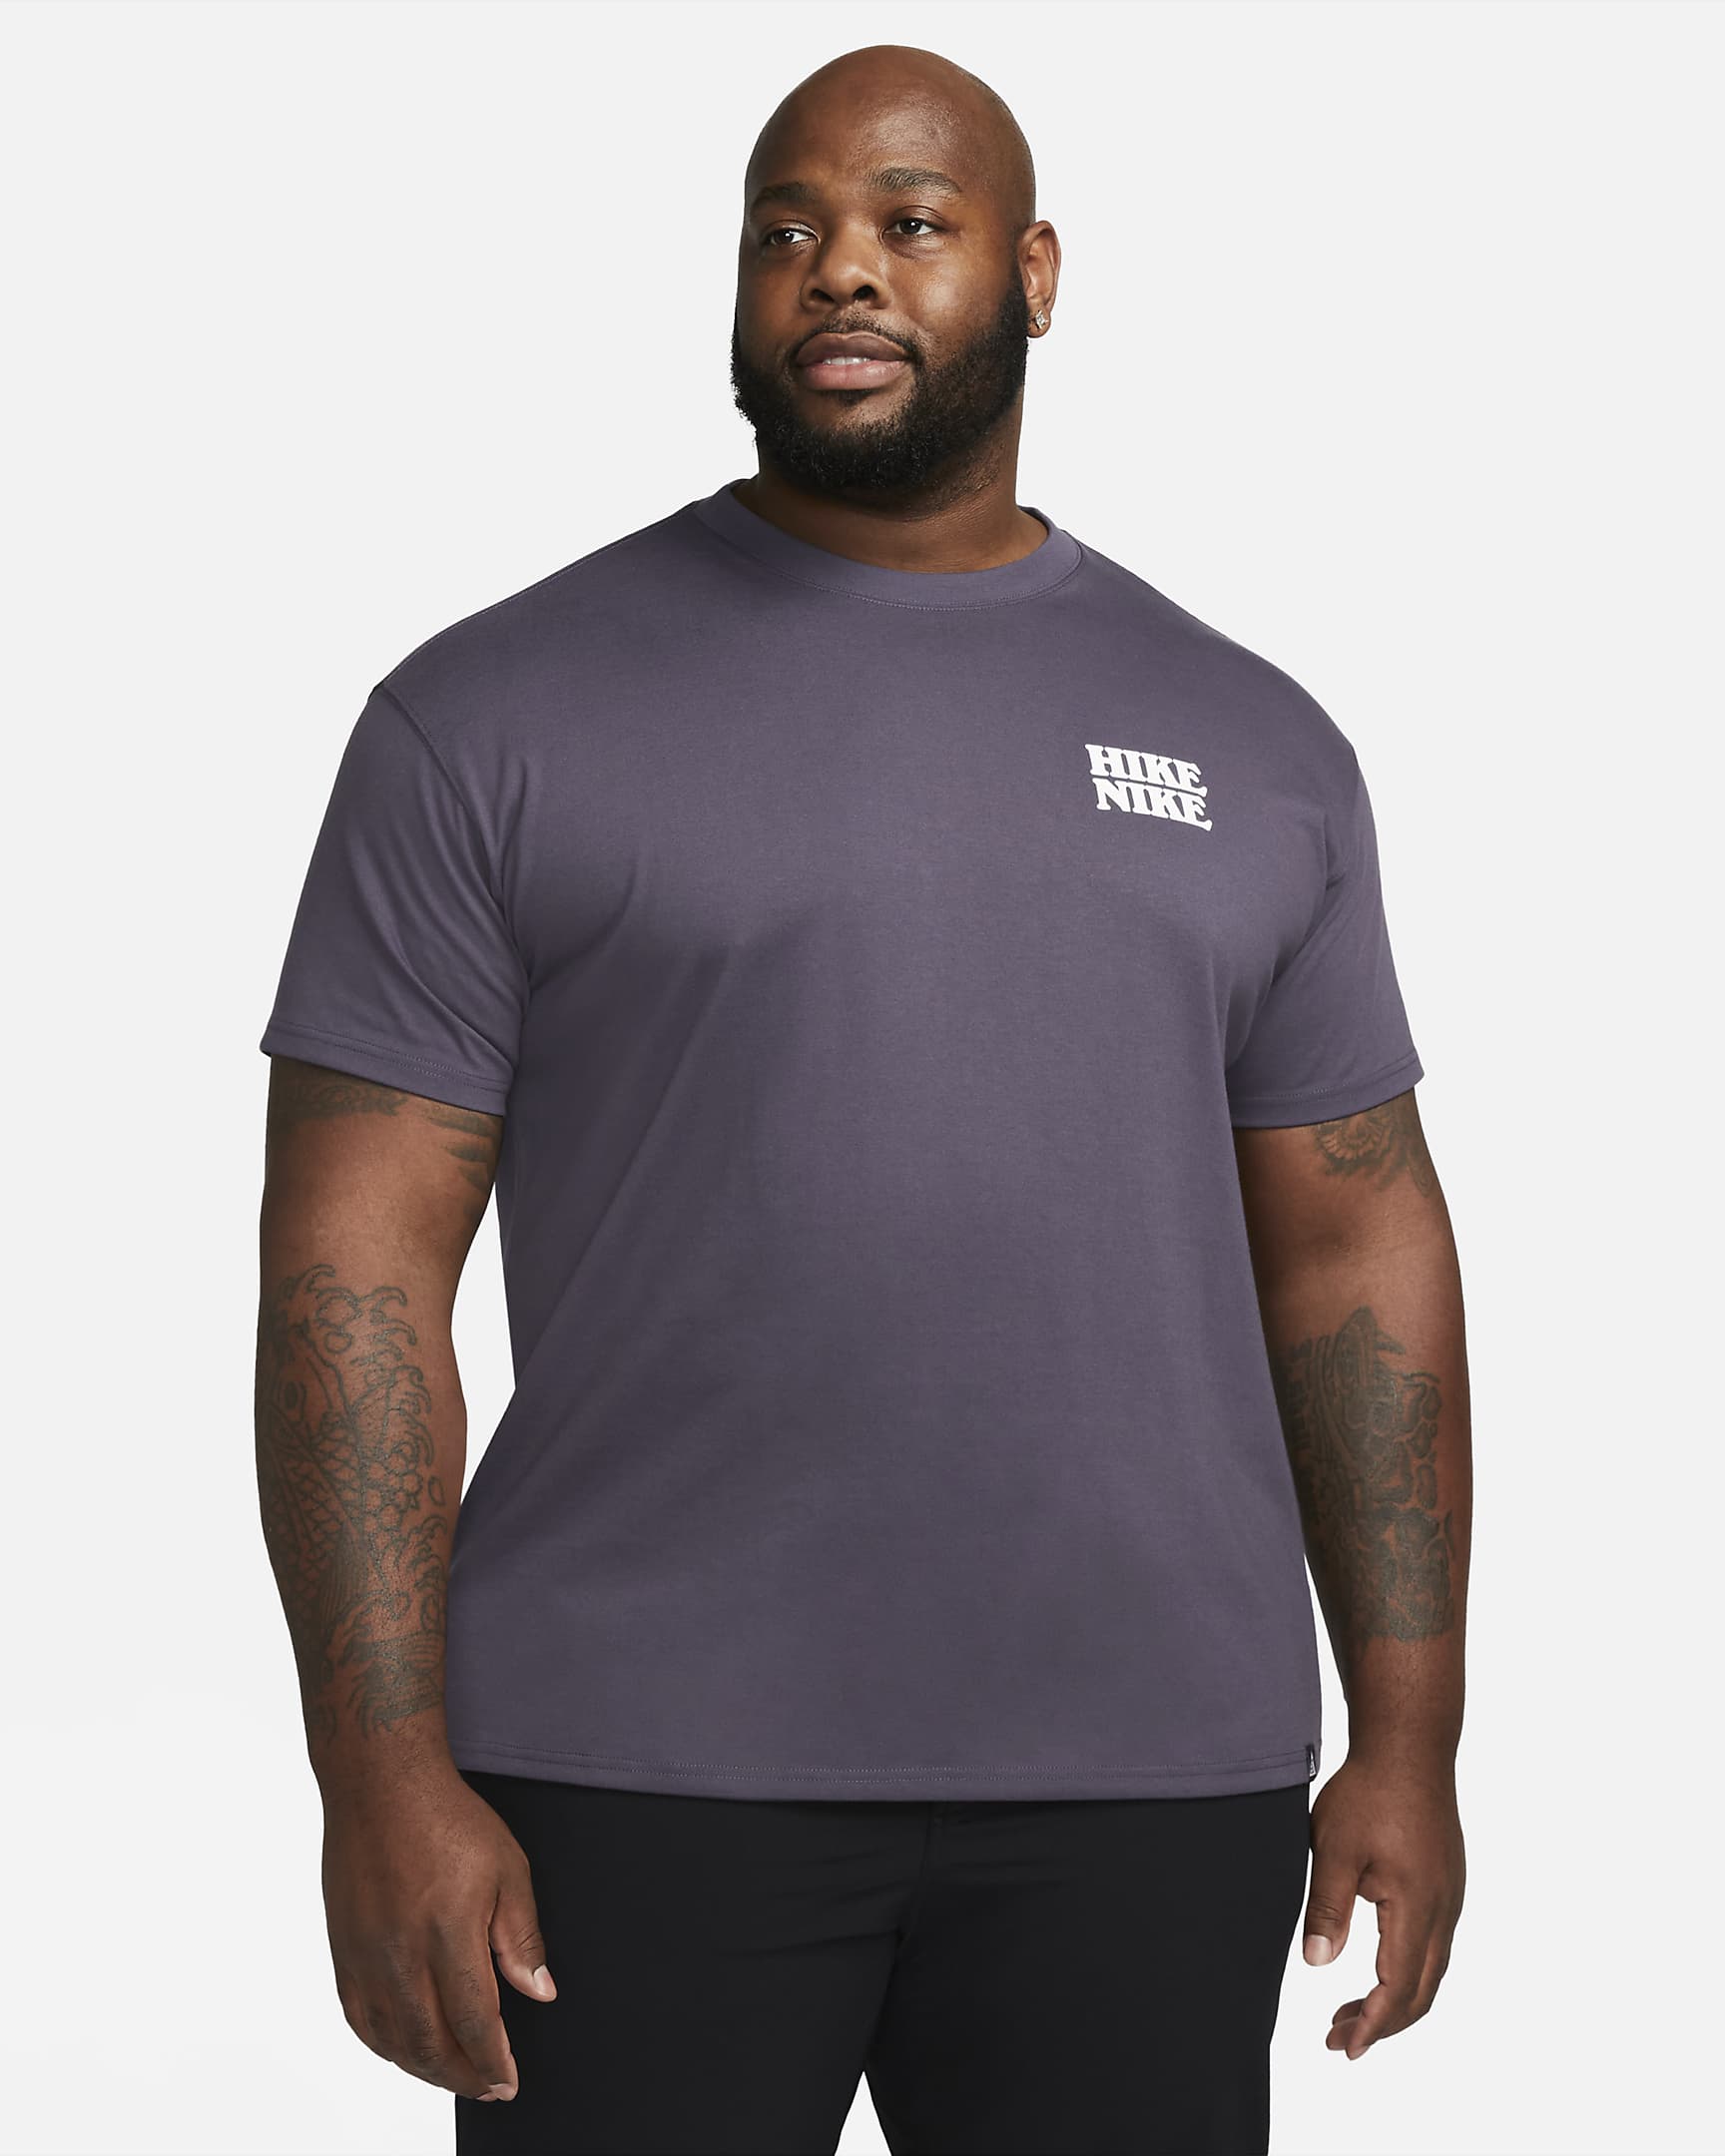 Nike ACG Men's T-Shirt. Nike.com